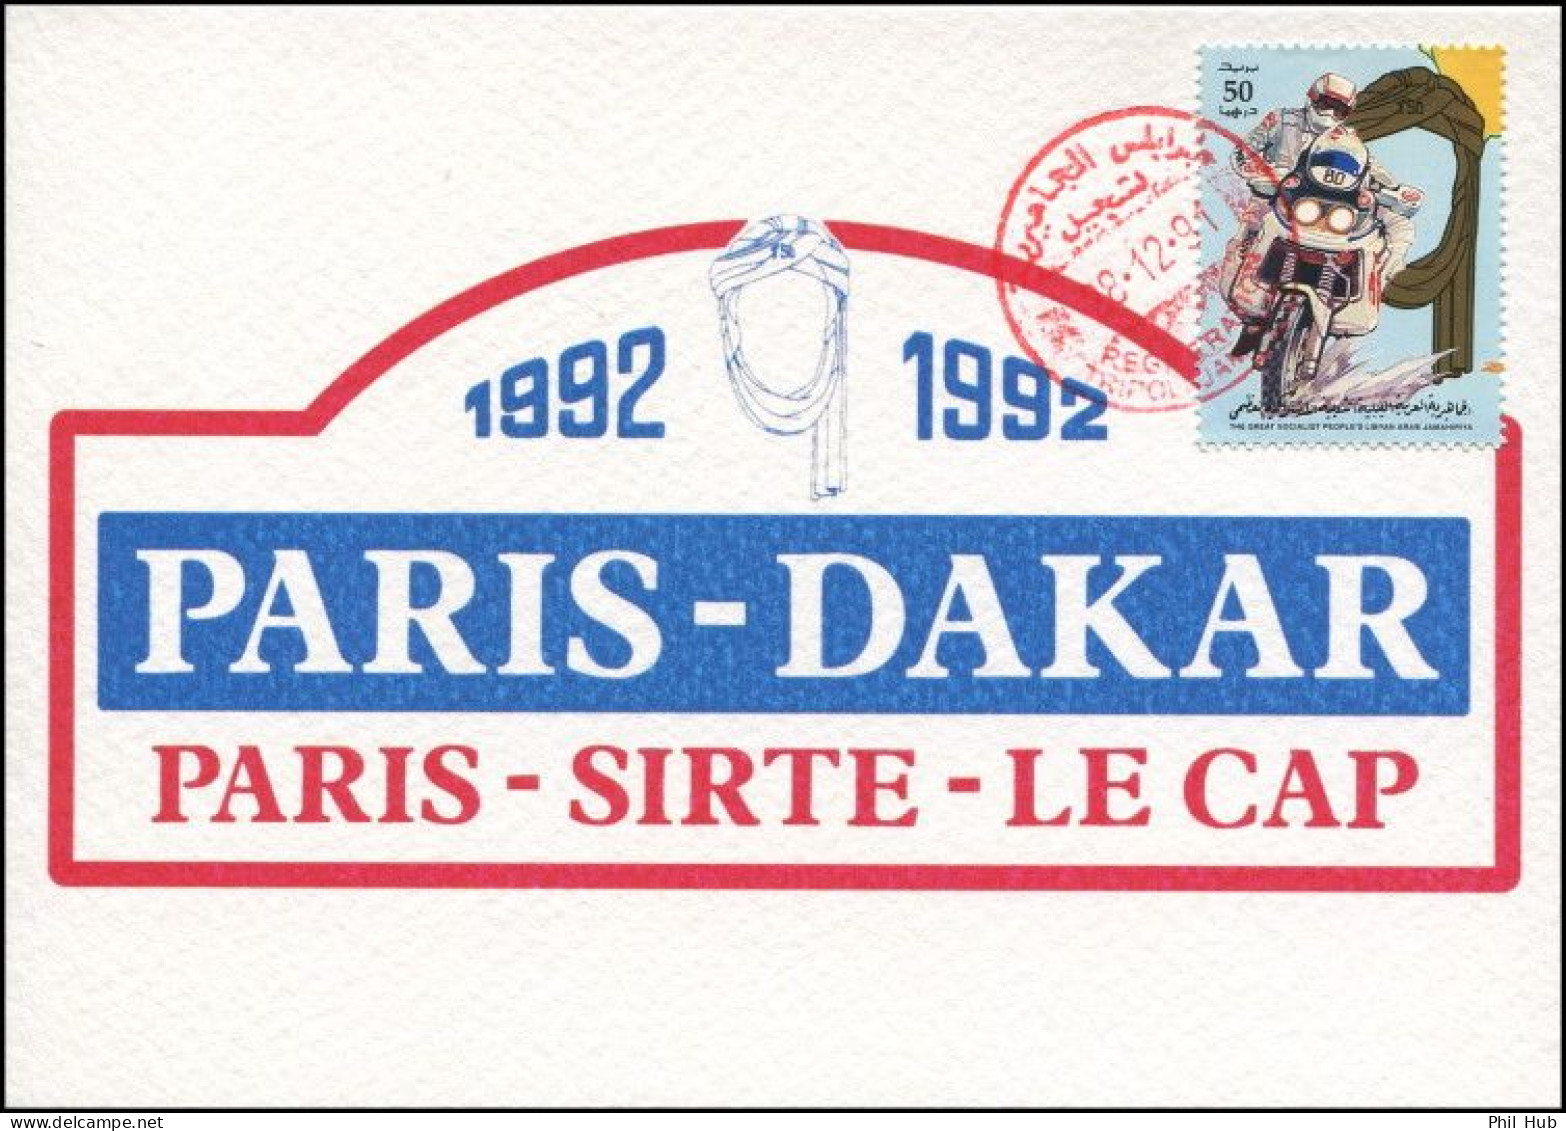 LIBYA 1991 Paris Dakar Rally Bikes (maximum-card) #6 - Motorbikes